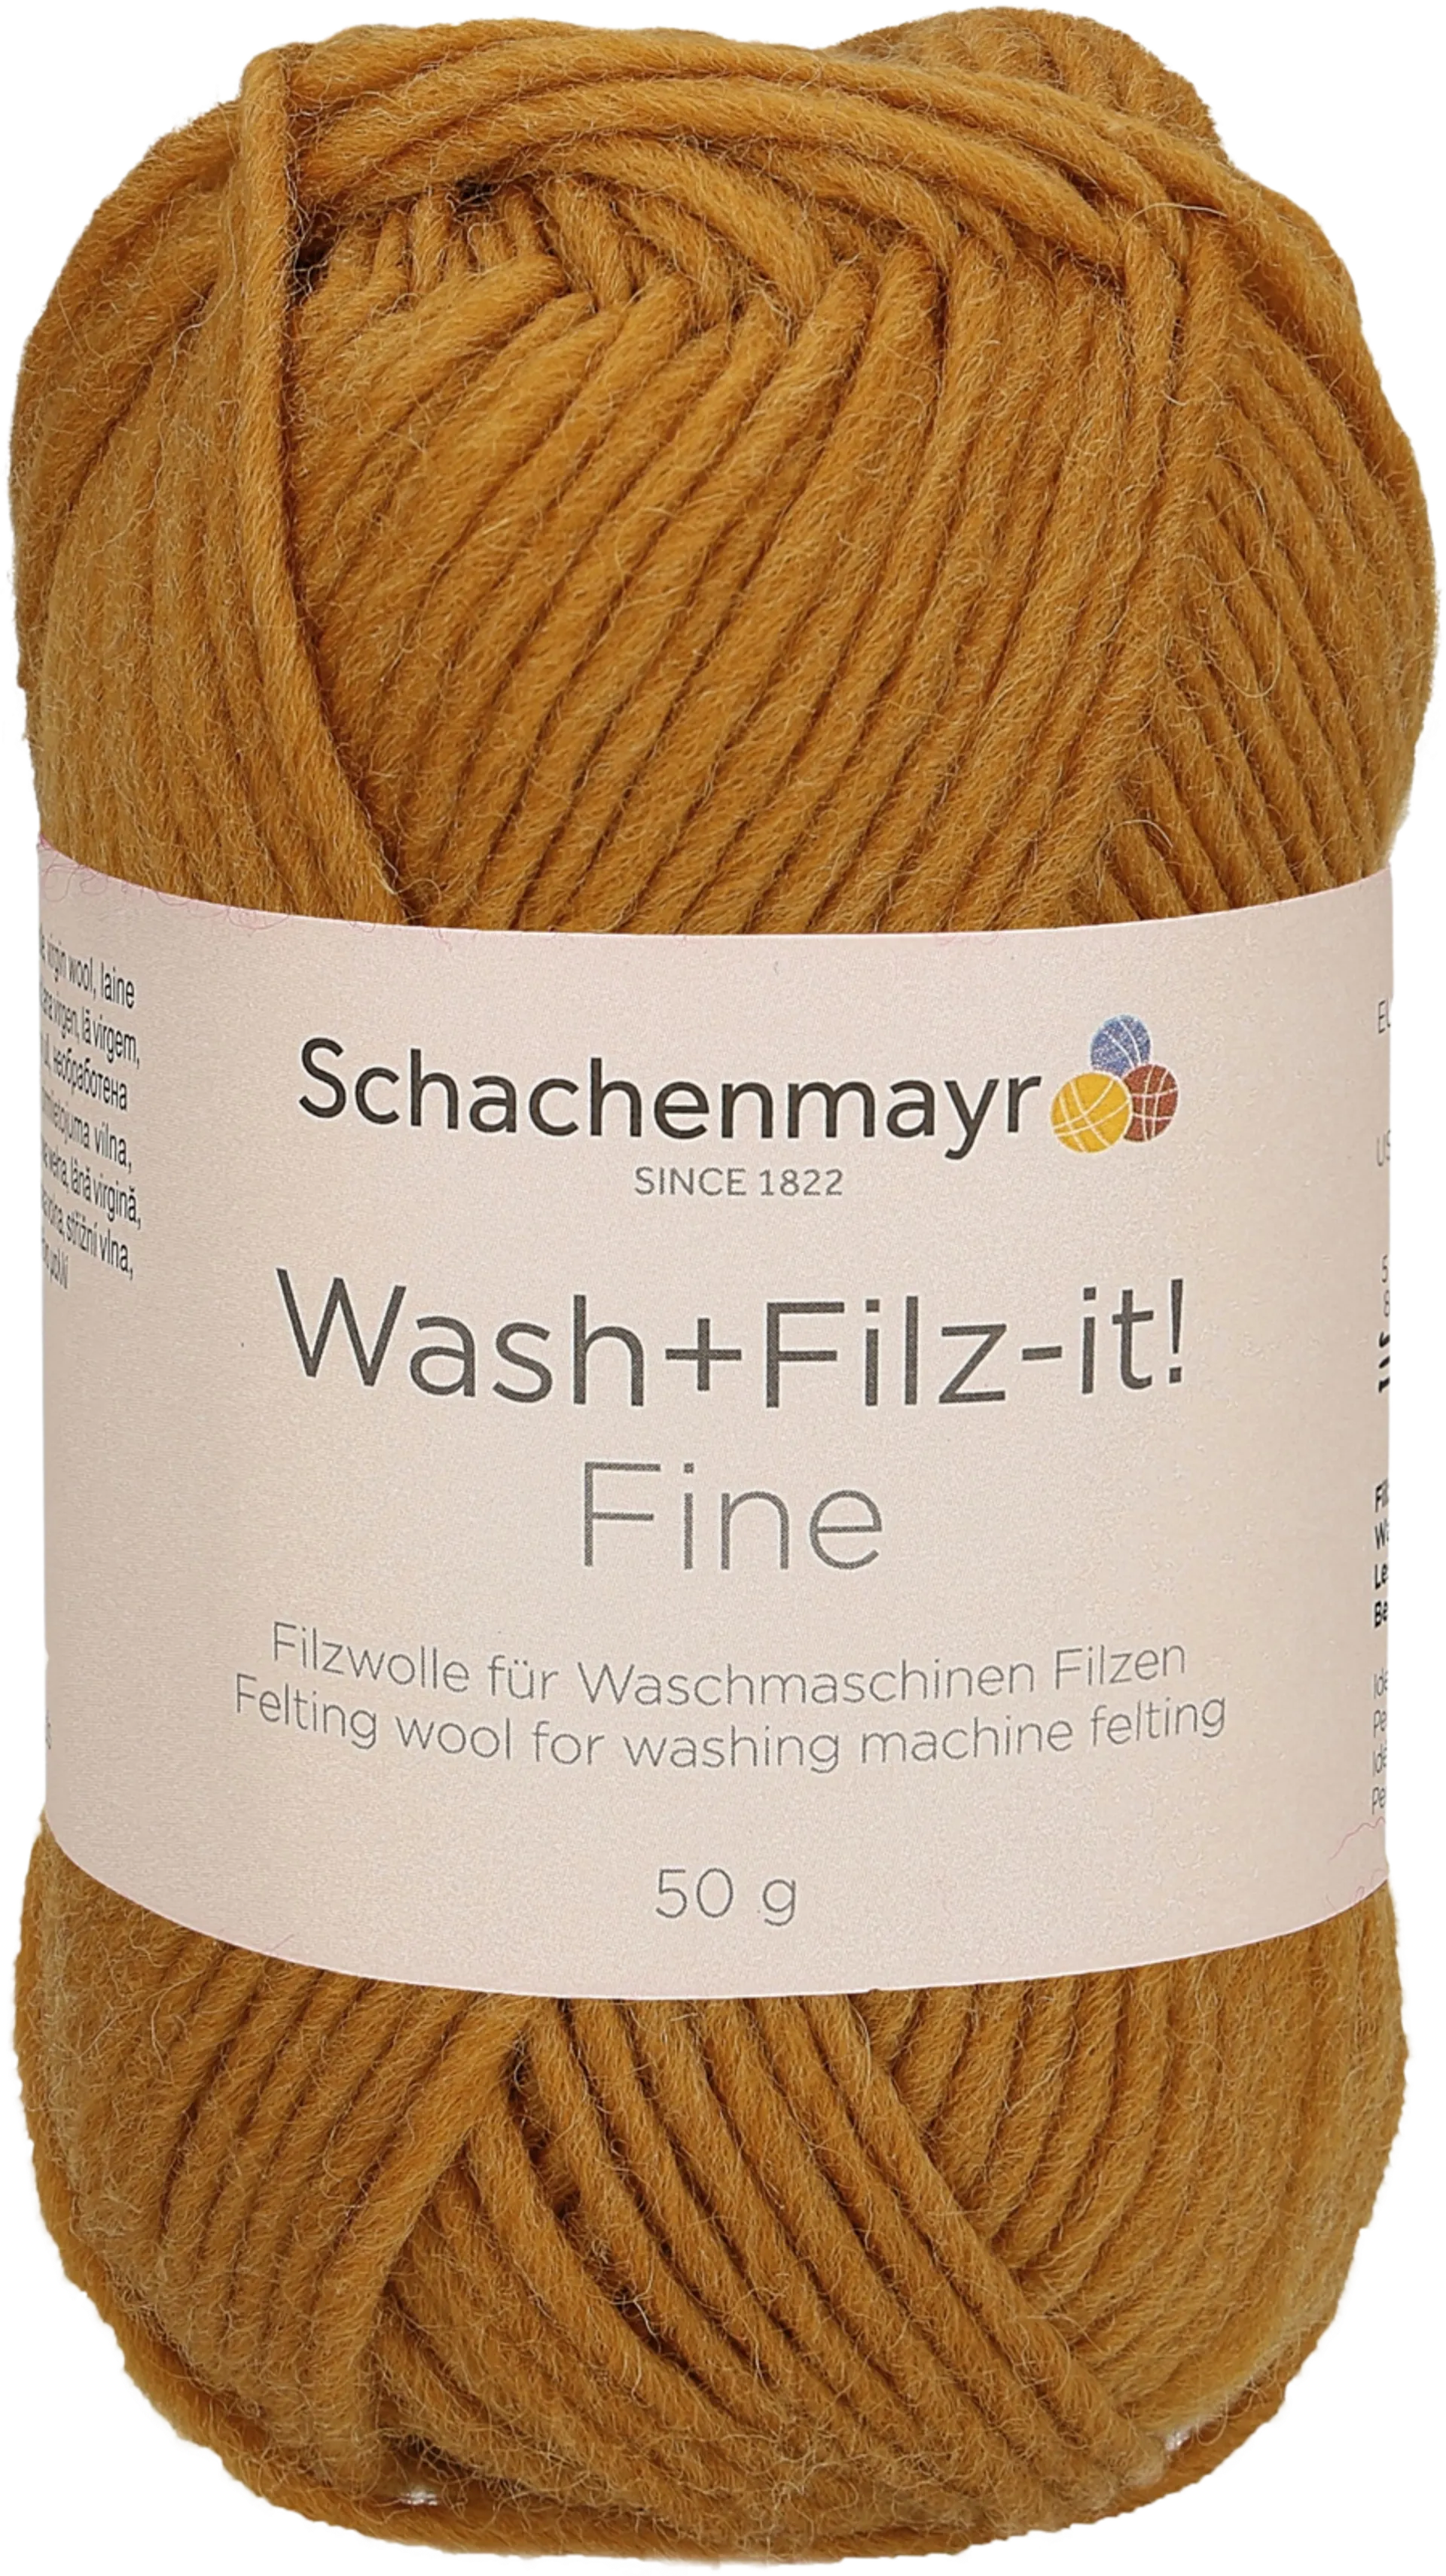 Schachenmayr Wash-Filz-it Fine neulelanka 50g - 1